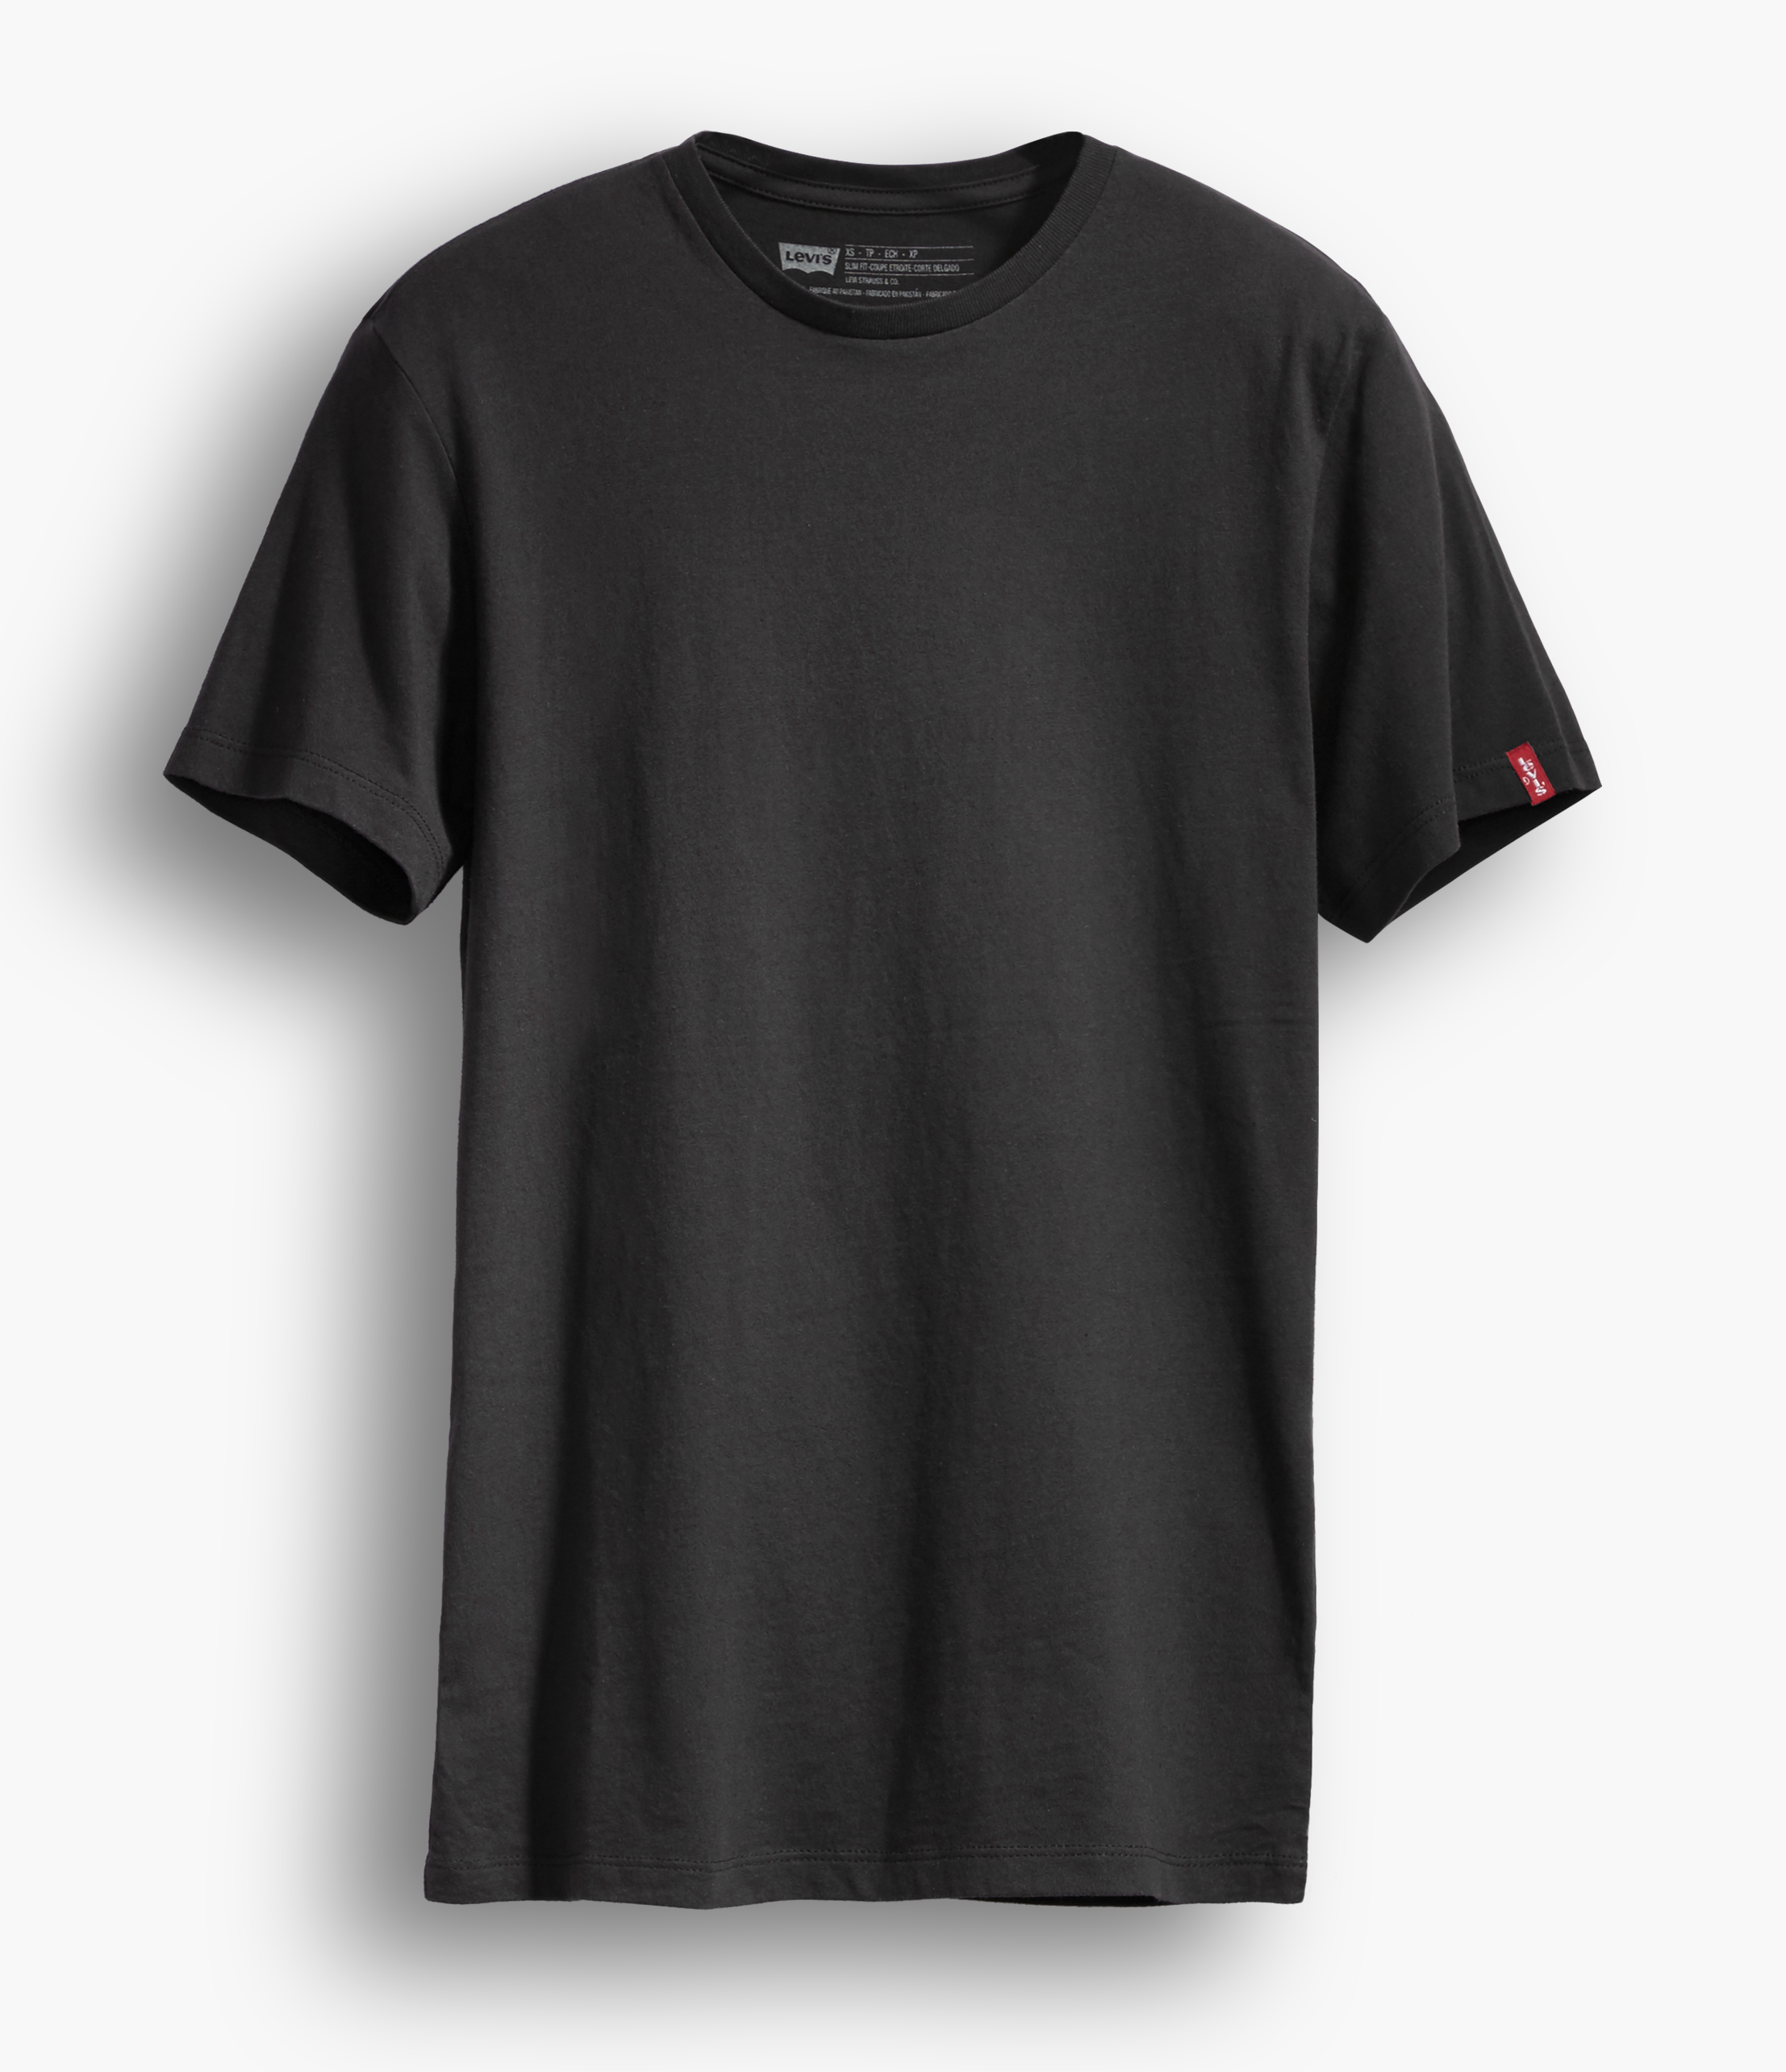 LEVIS 2er Pack Shirts Rundhals T-Shirt 82176-0003 schwarz W18-LVT1